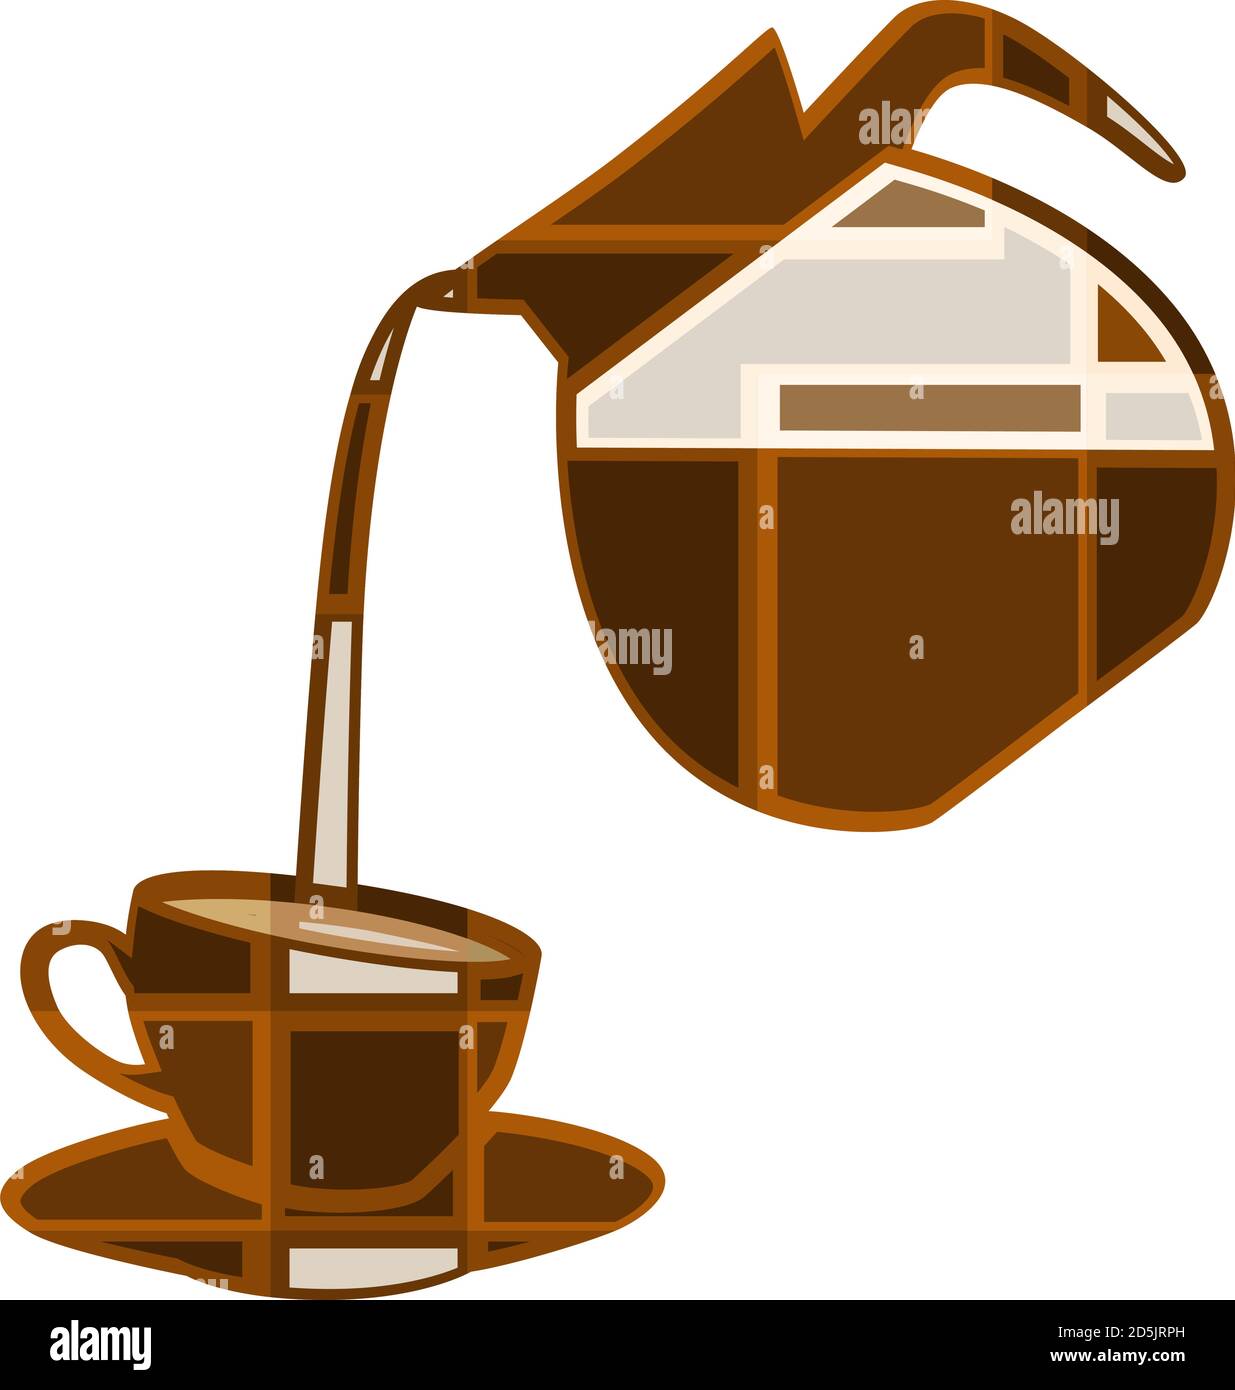 Ilustración de mosaico vectorial editable del café que se vierte en una taza Ilustración del Vector